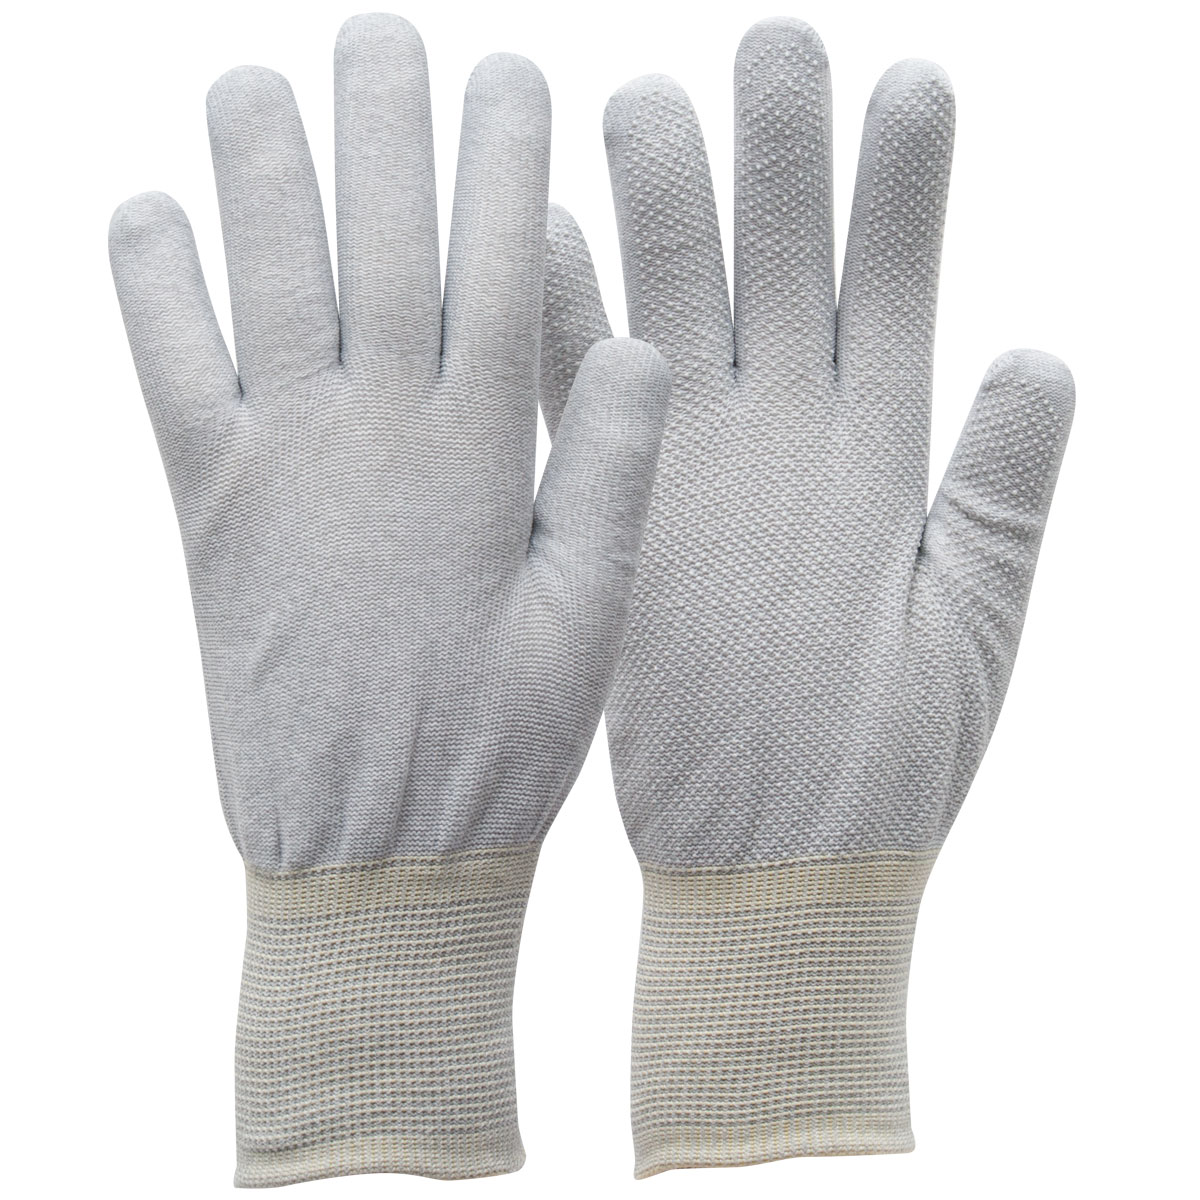 1R850 Nylon-Kupfergarn-Handschuh mit PU-Innenhandbeschichtung